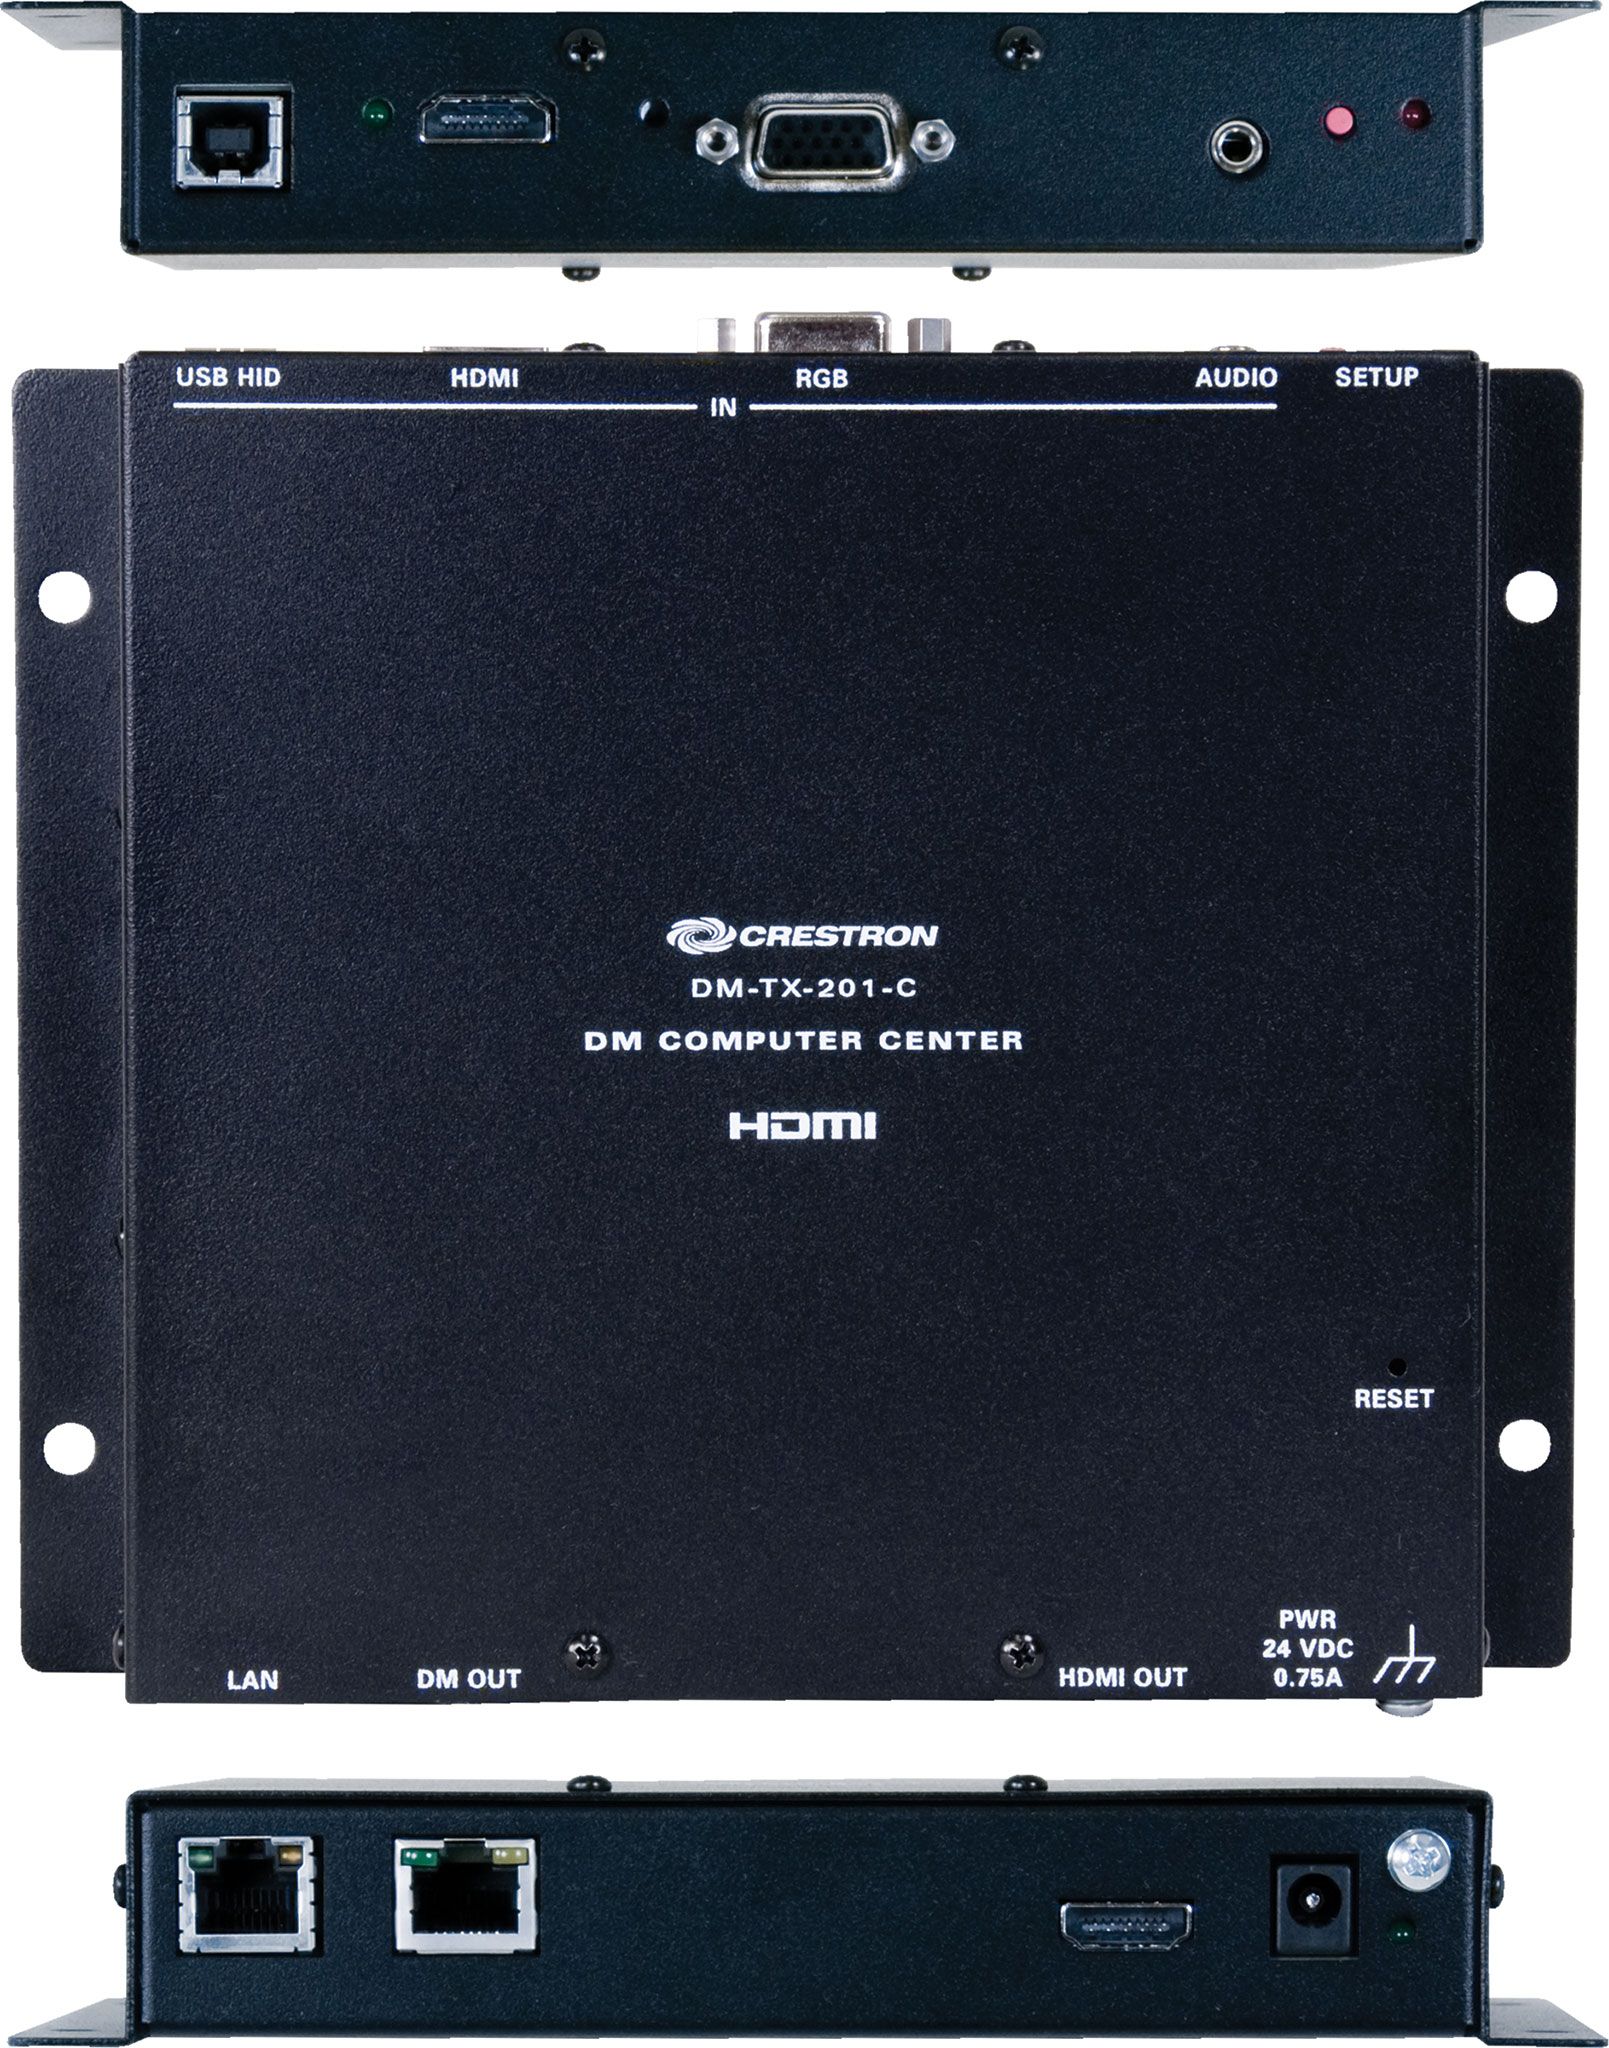 Transmitter 201 w/ AC adapter CRESTRON DM-TX-201-C DigitalMedia 8G